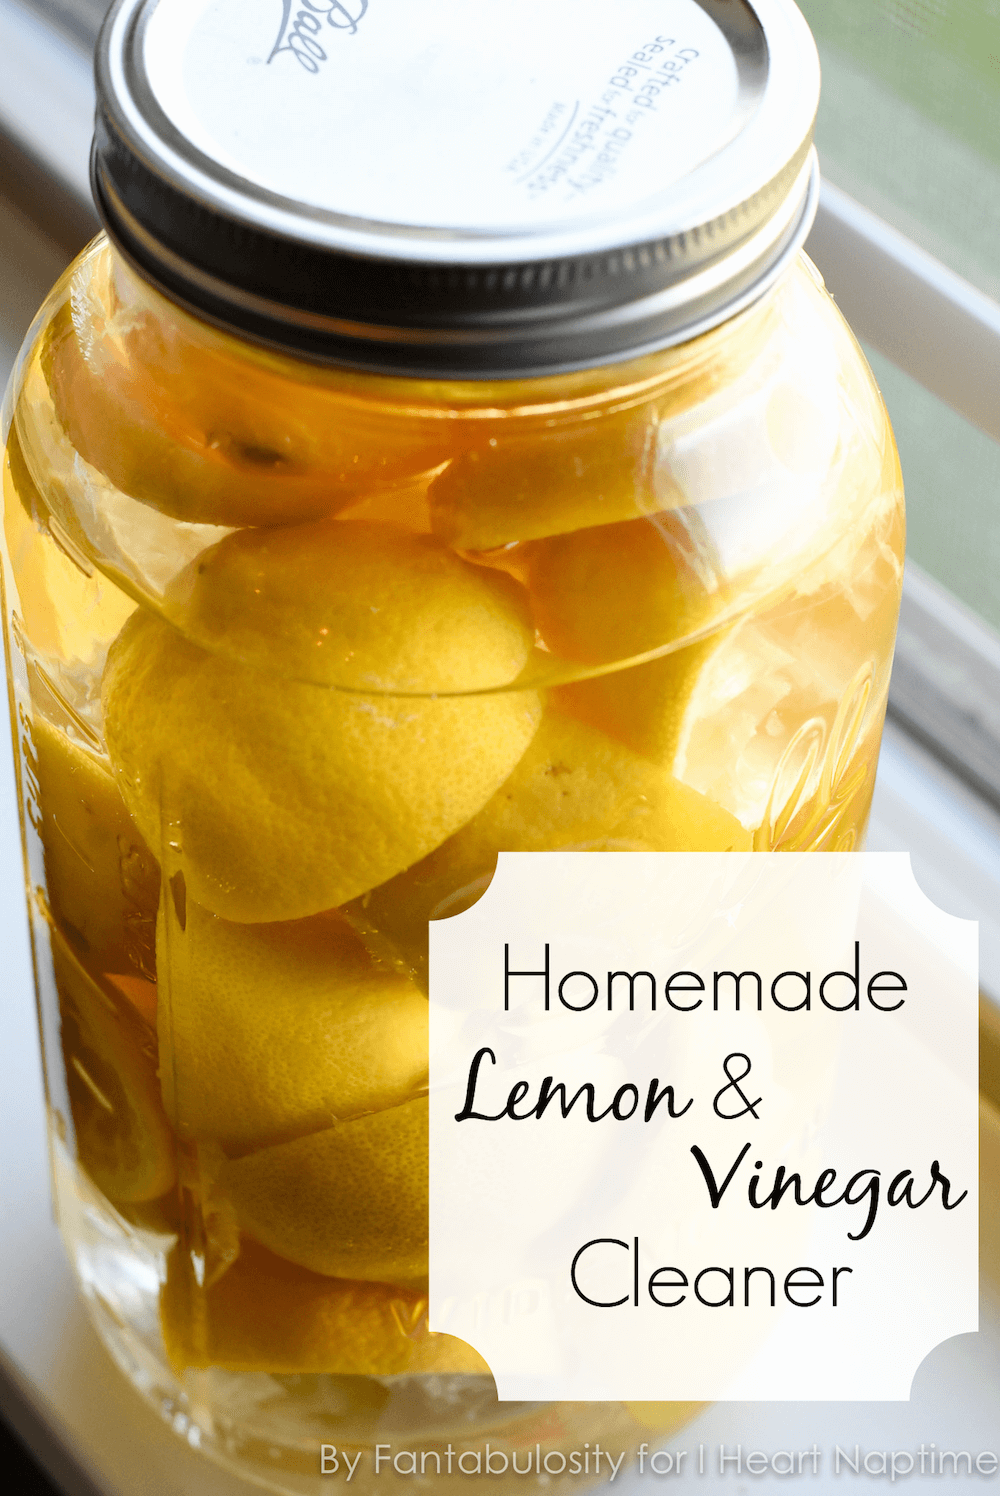 Homemade Lemon Vinegar Cleaner - I